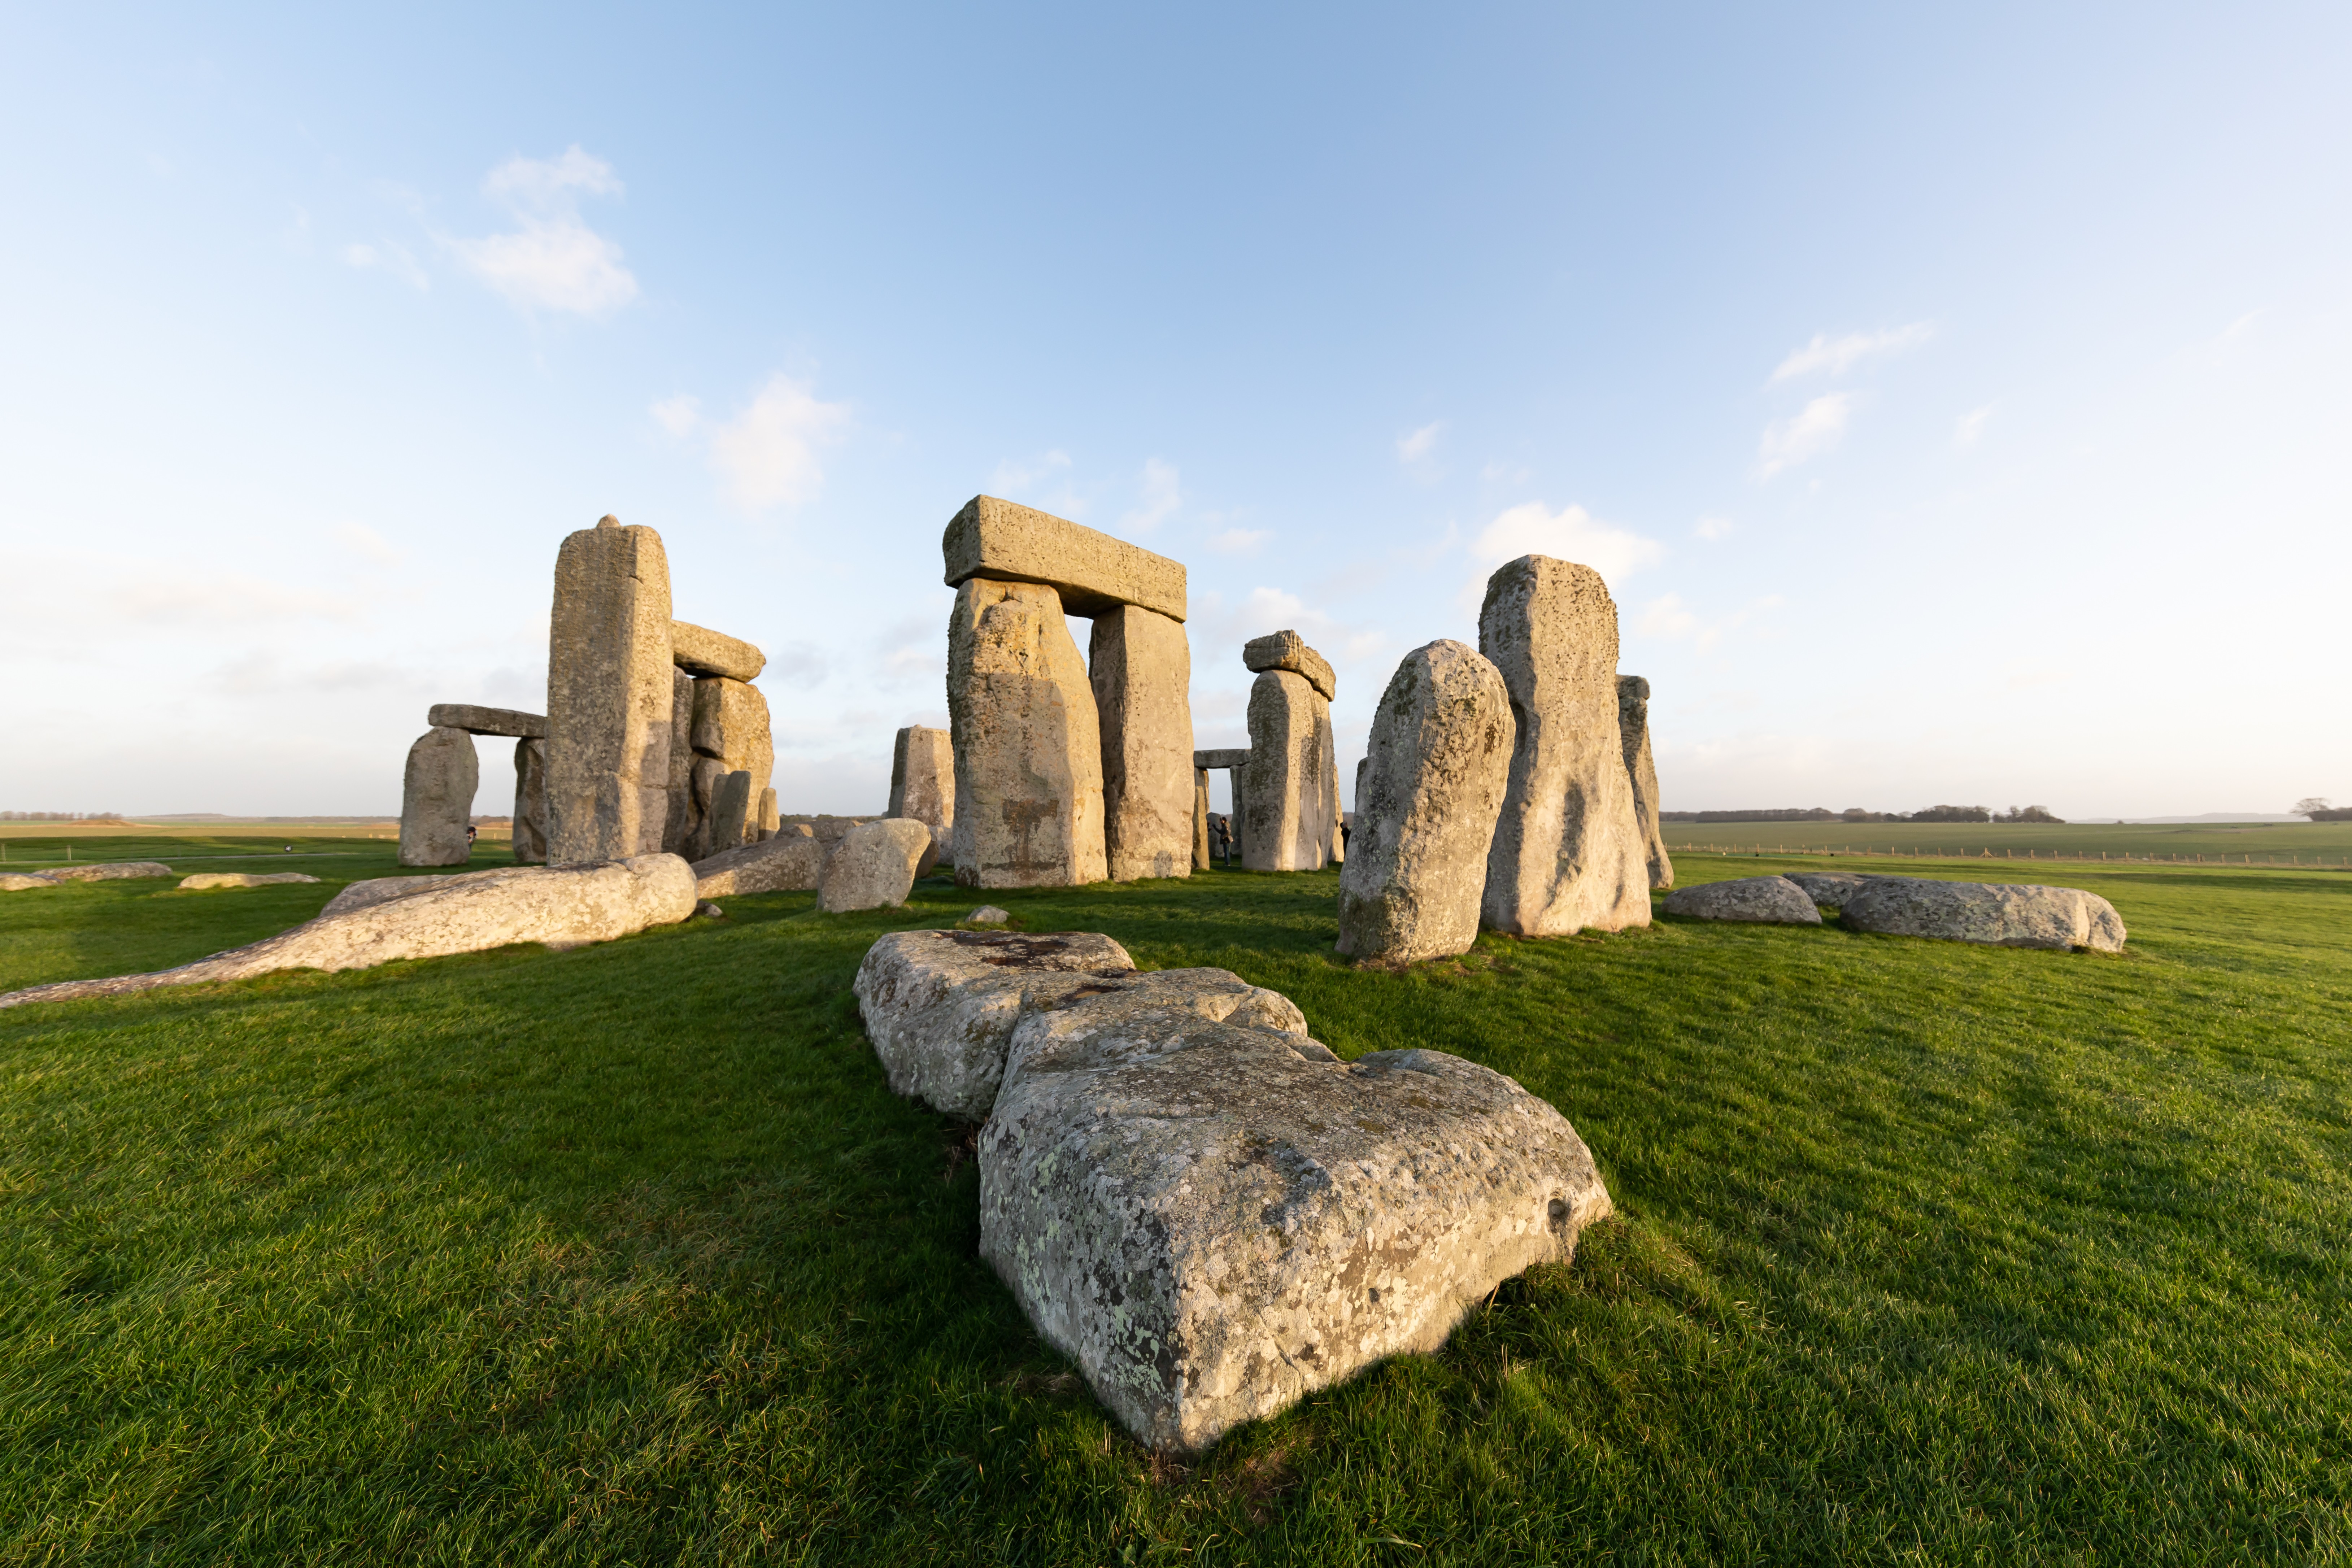  Cientistas encontraram uma misteriosa estrutura de eixos profundos perto de Stonehenge (Foto: Getty Image )